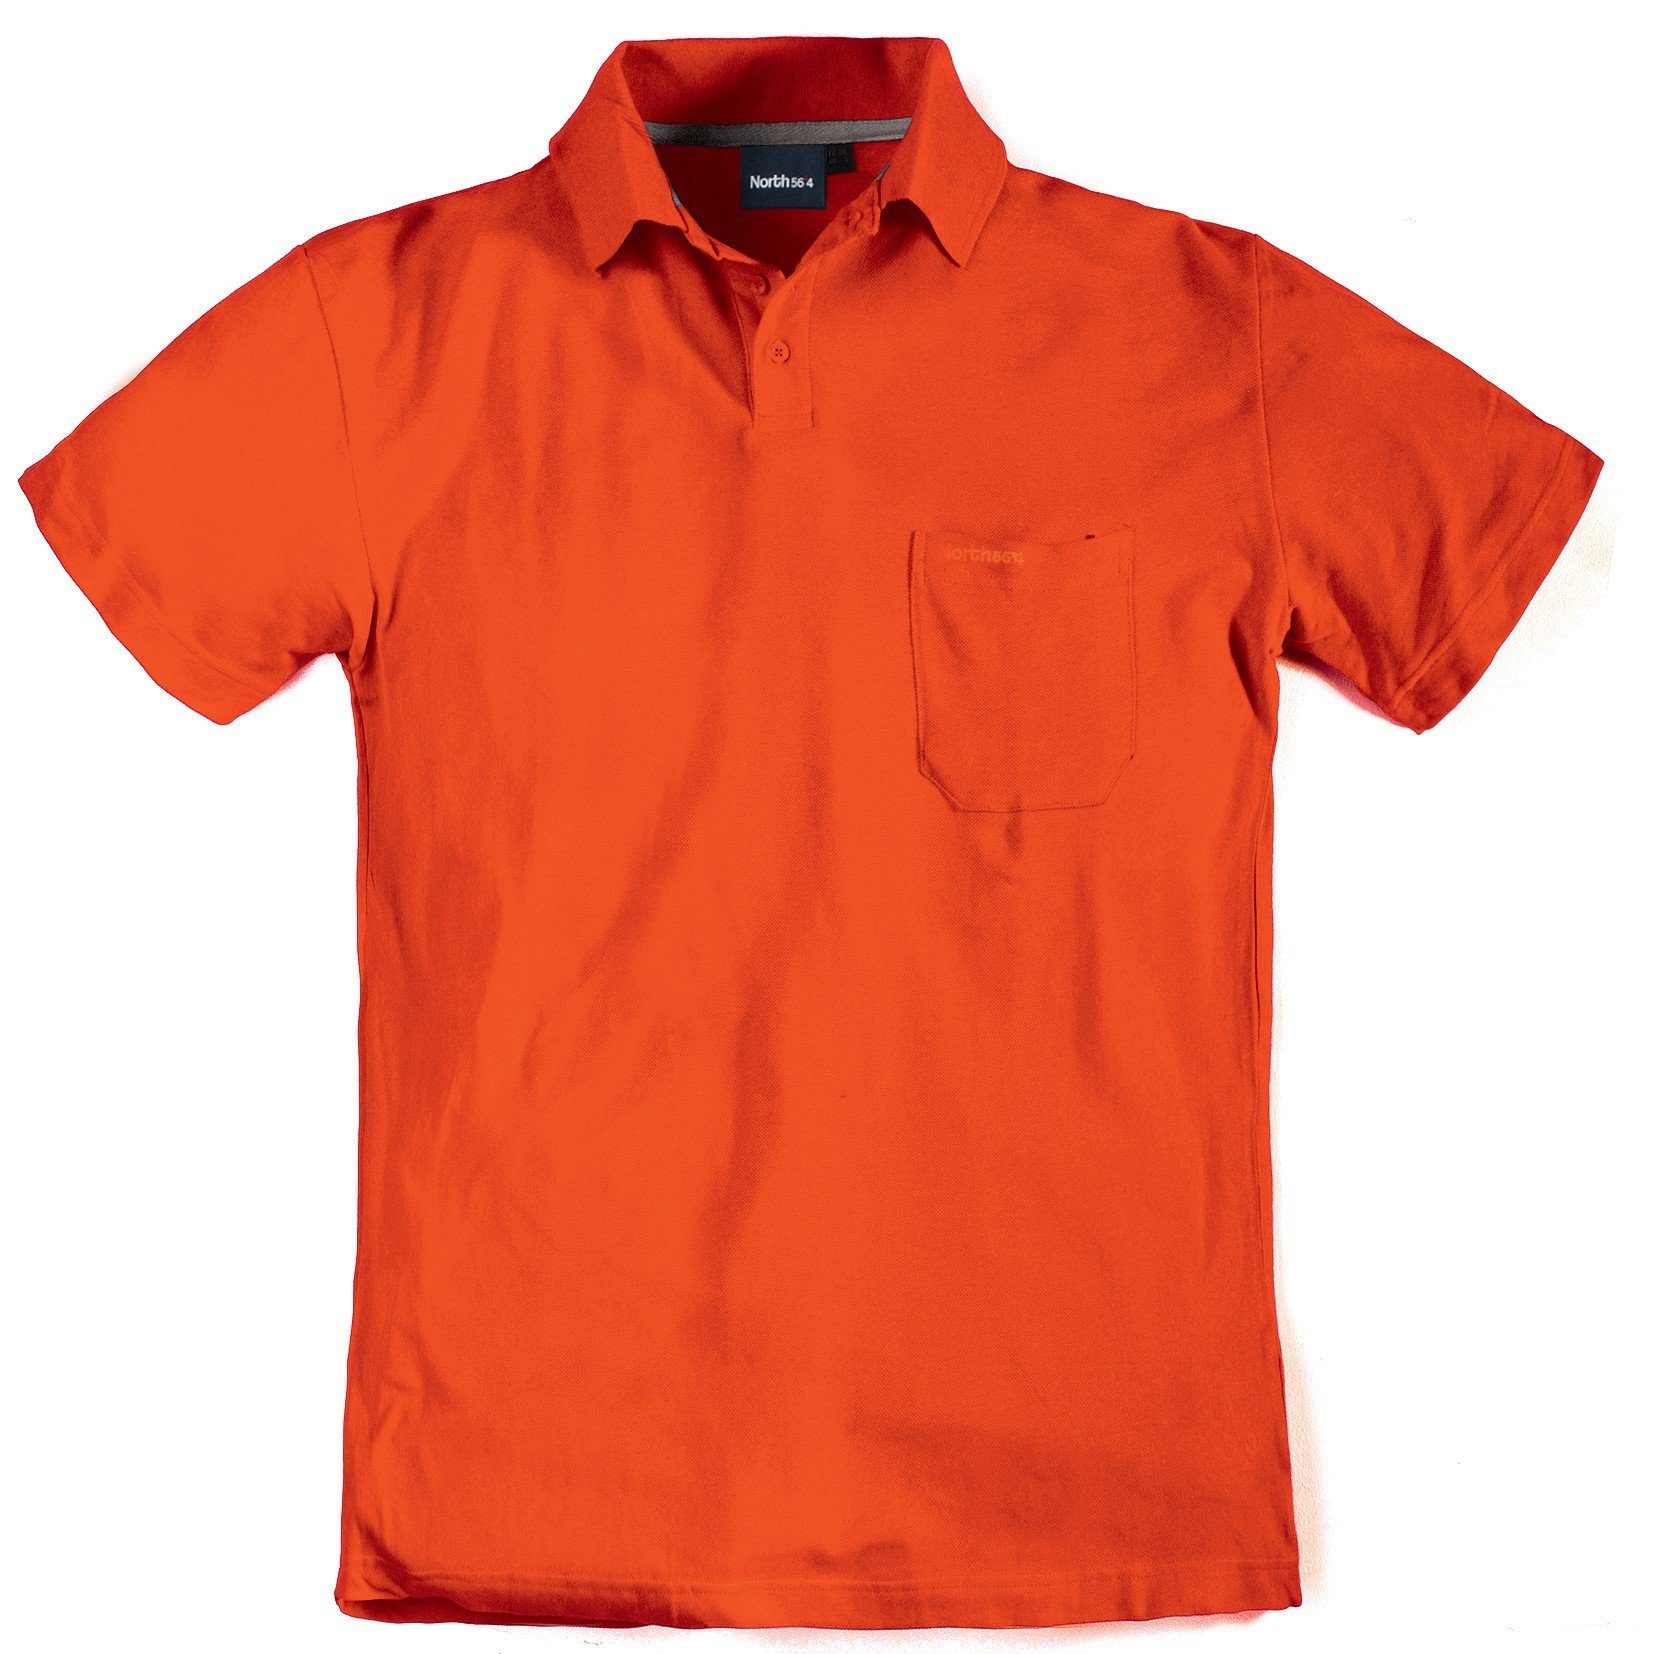 56 von Herren- in Größen bis north 4 Allsize großen 8XL, Kurzarmpolo Poloshirt orange